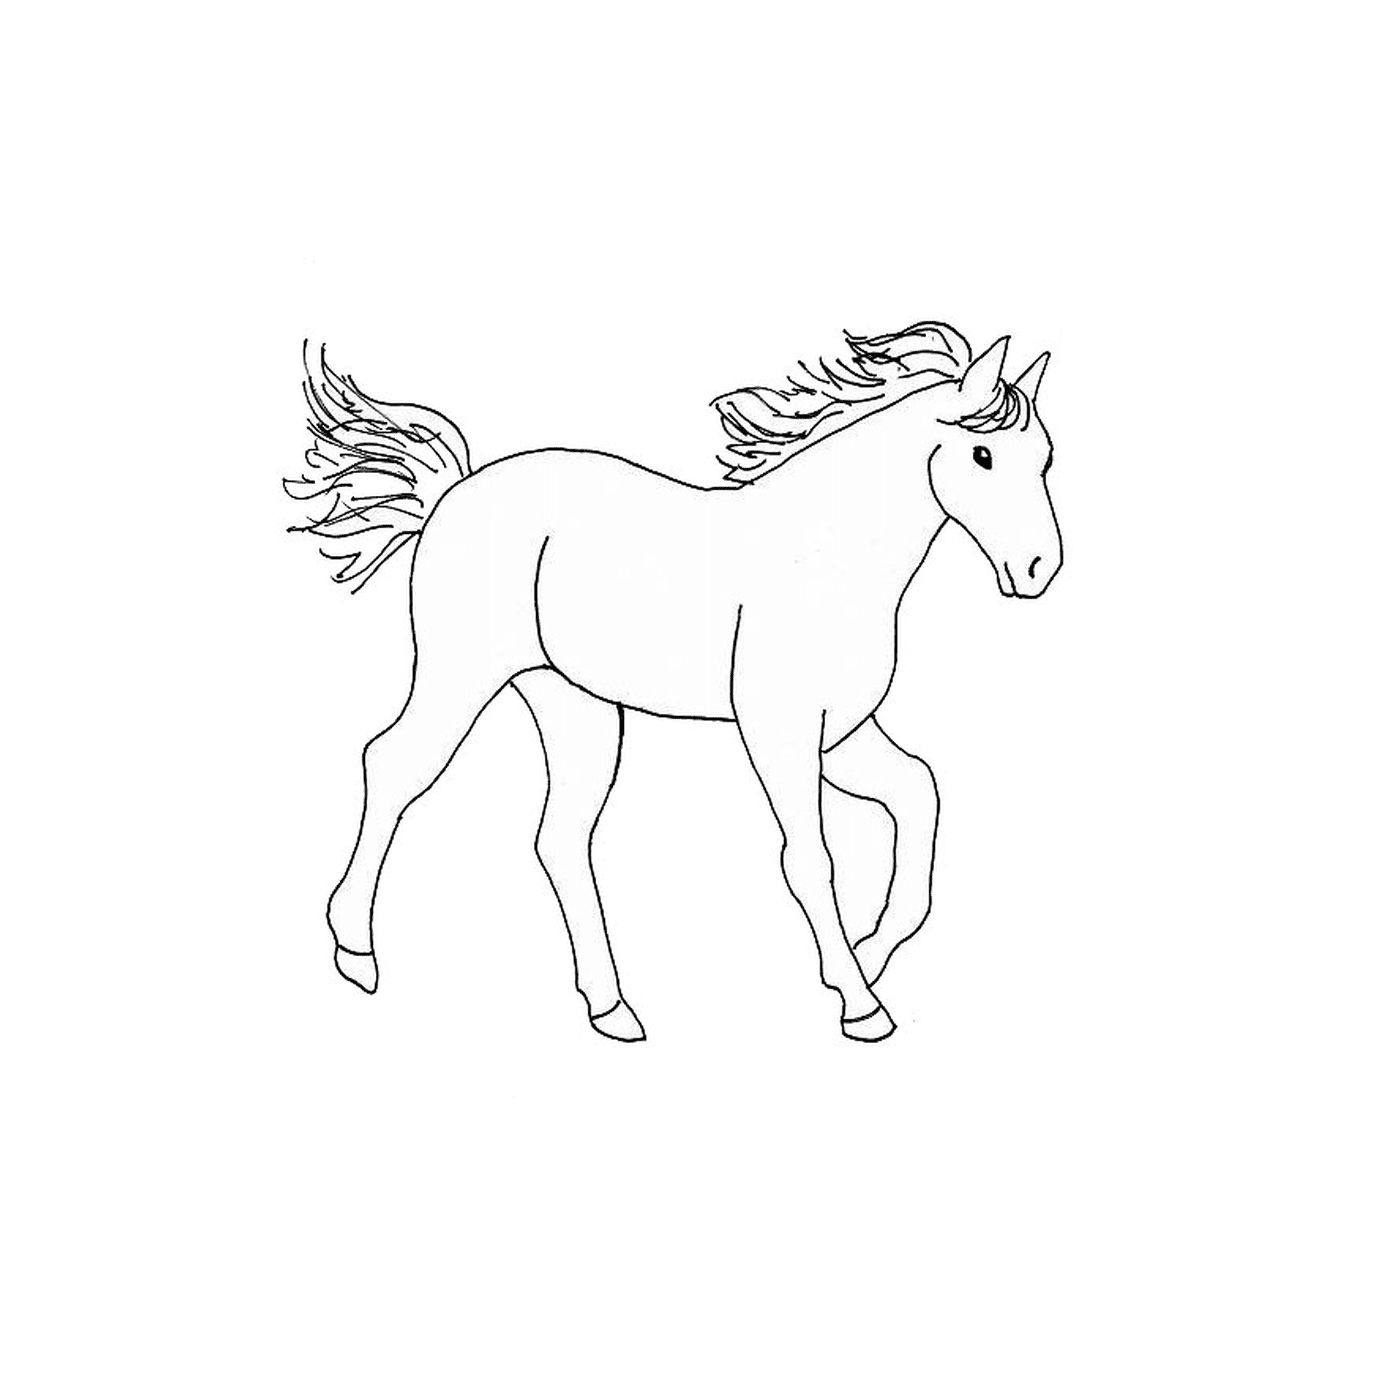   Cheval - Un cheval 